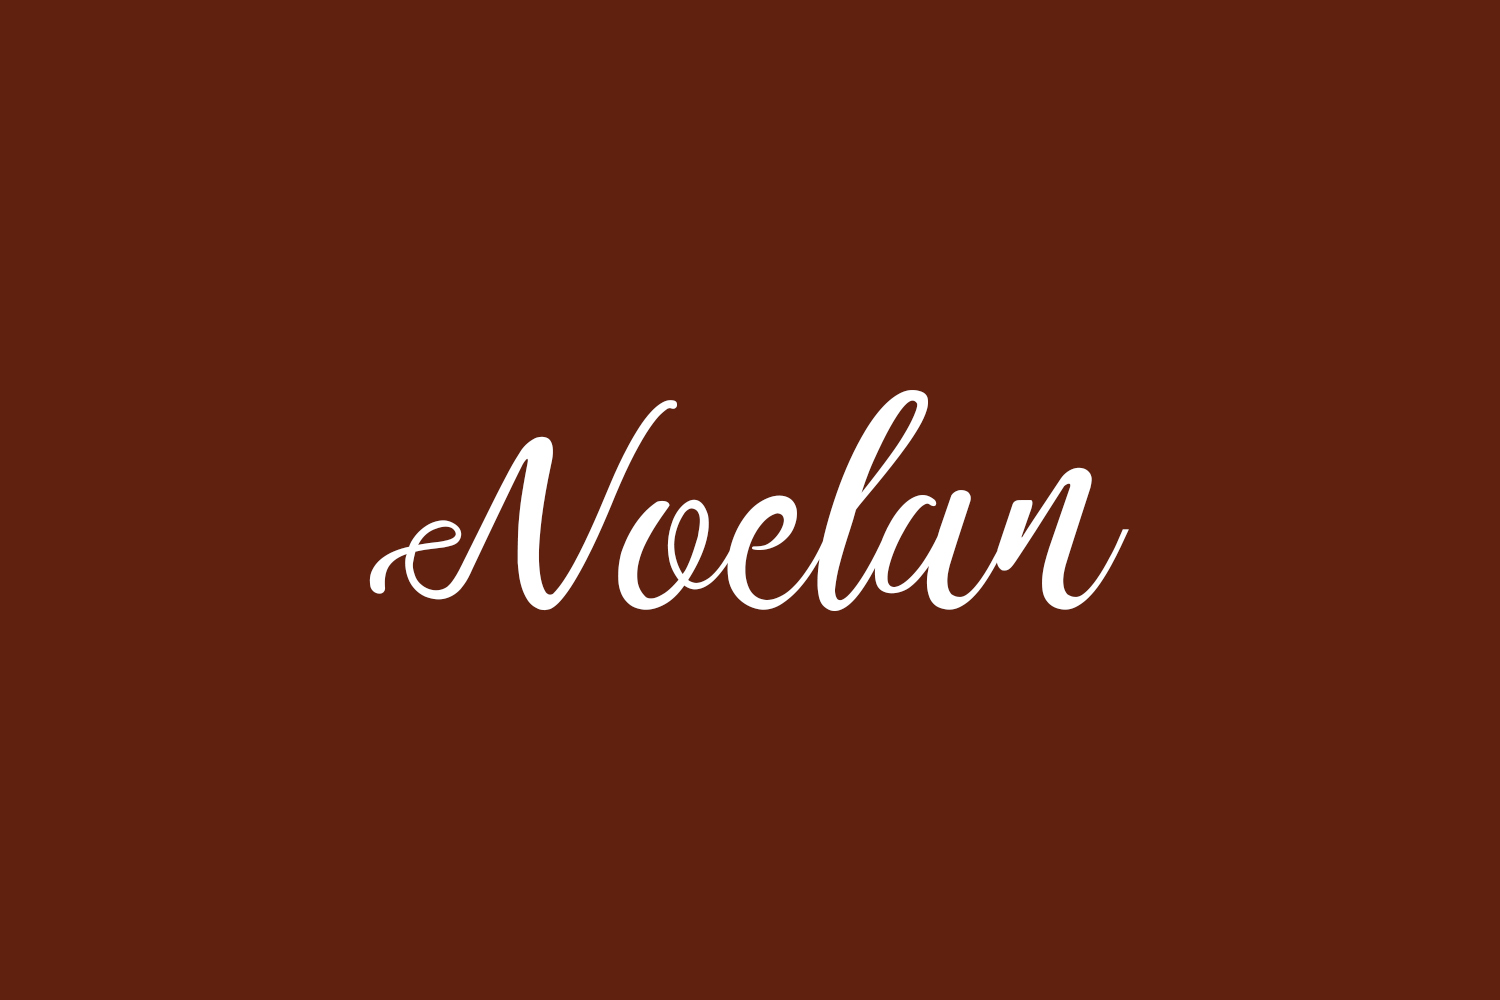 Noelan Free Font